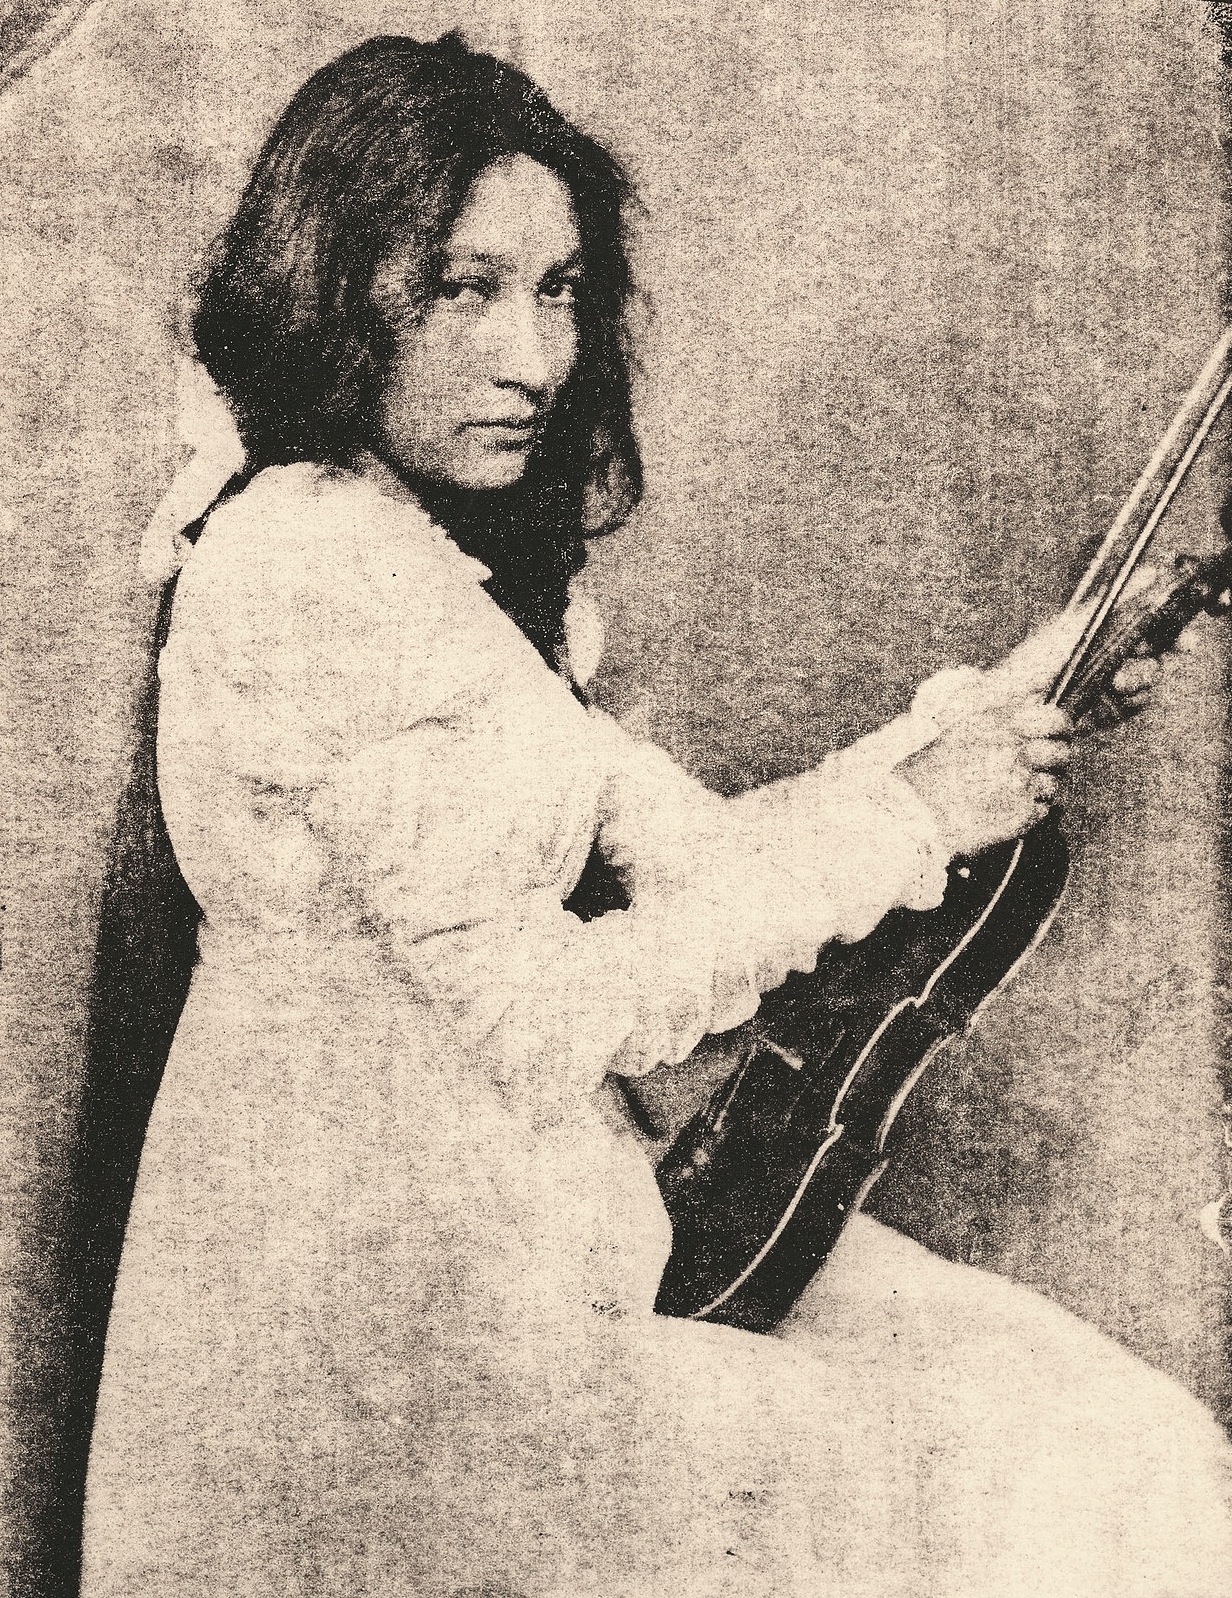 Zitakala-Sa et son violon vers 1890